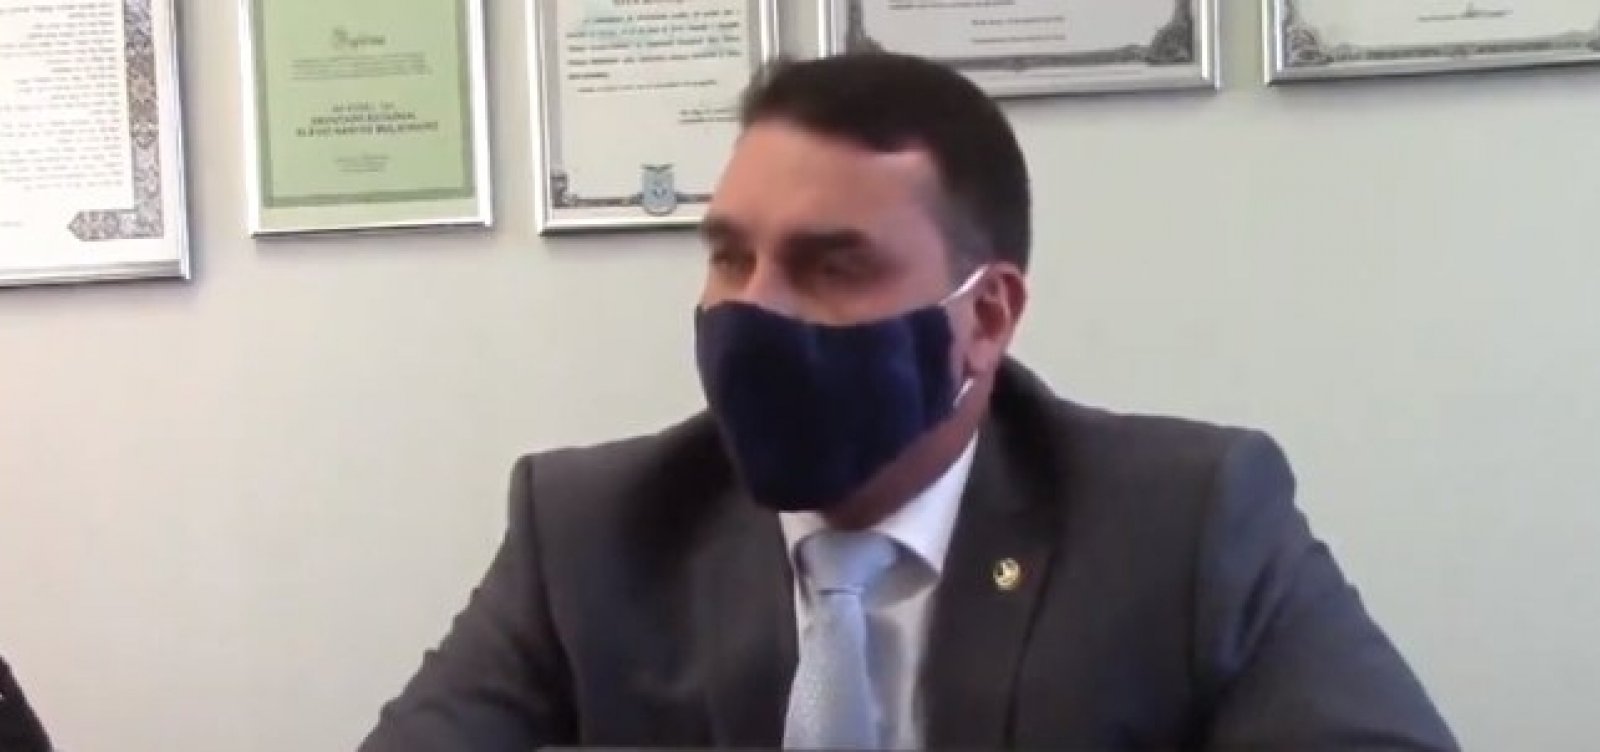 Flávio admite reunião com Paulo Marinho, mas nega vazamento de Operação Furna da Onça